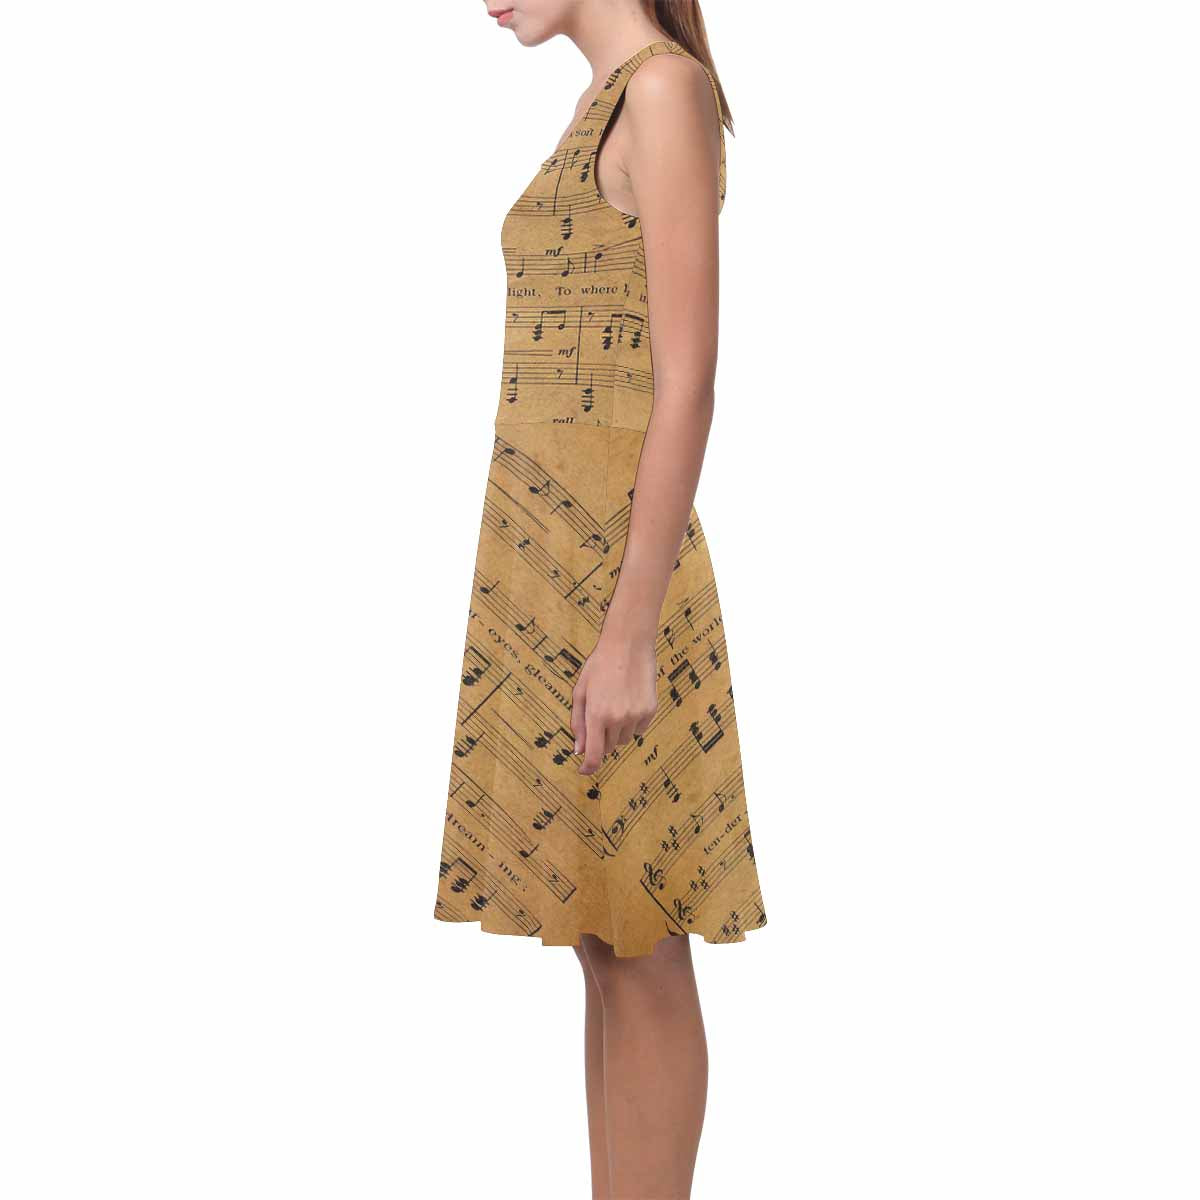 Antique General summer dress, MODEL 09534, design 60